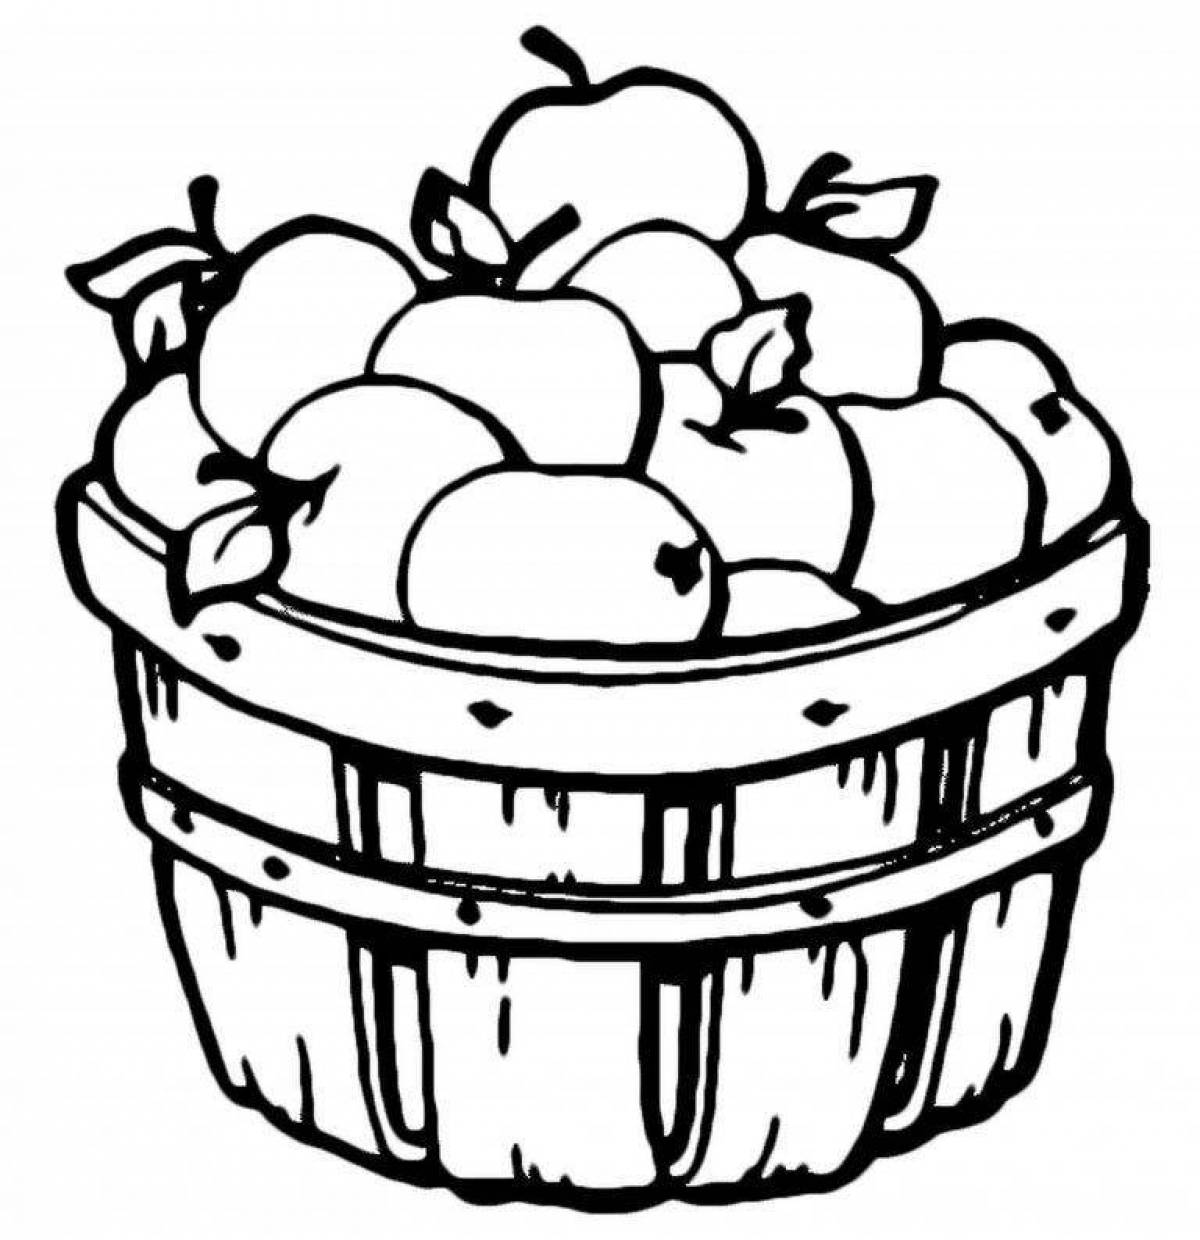 Fun fruit basket coloring page